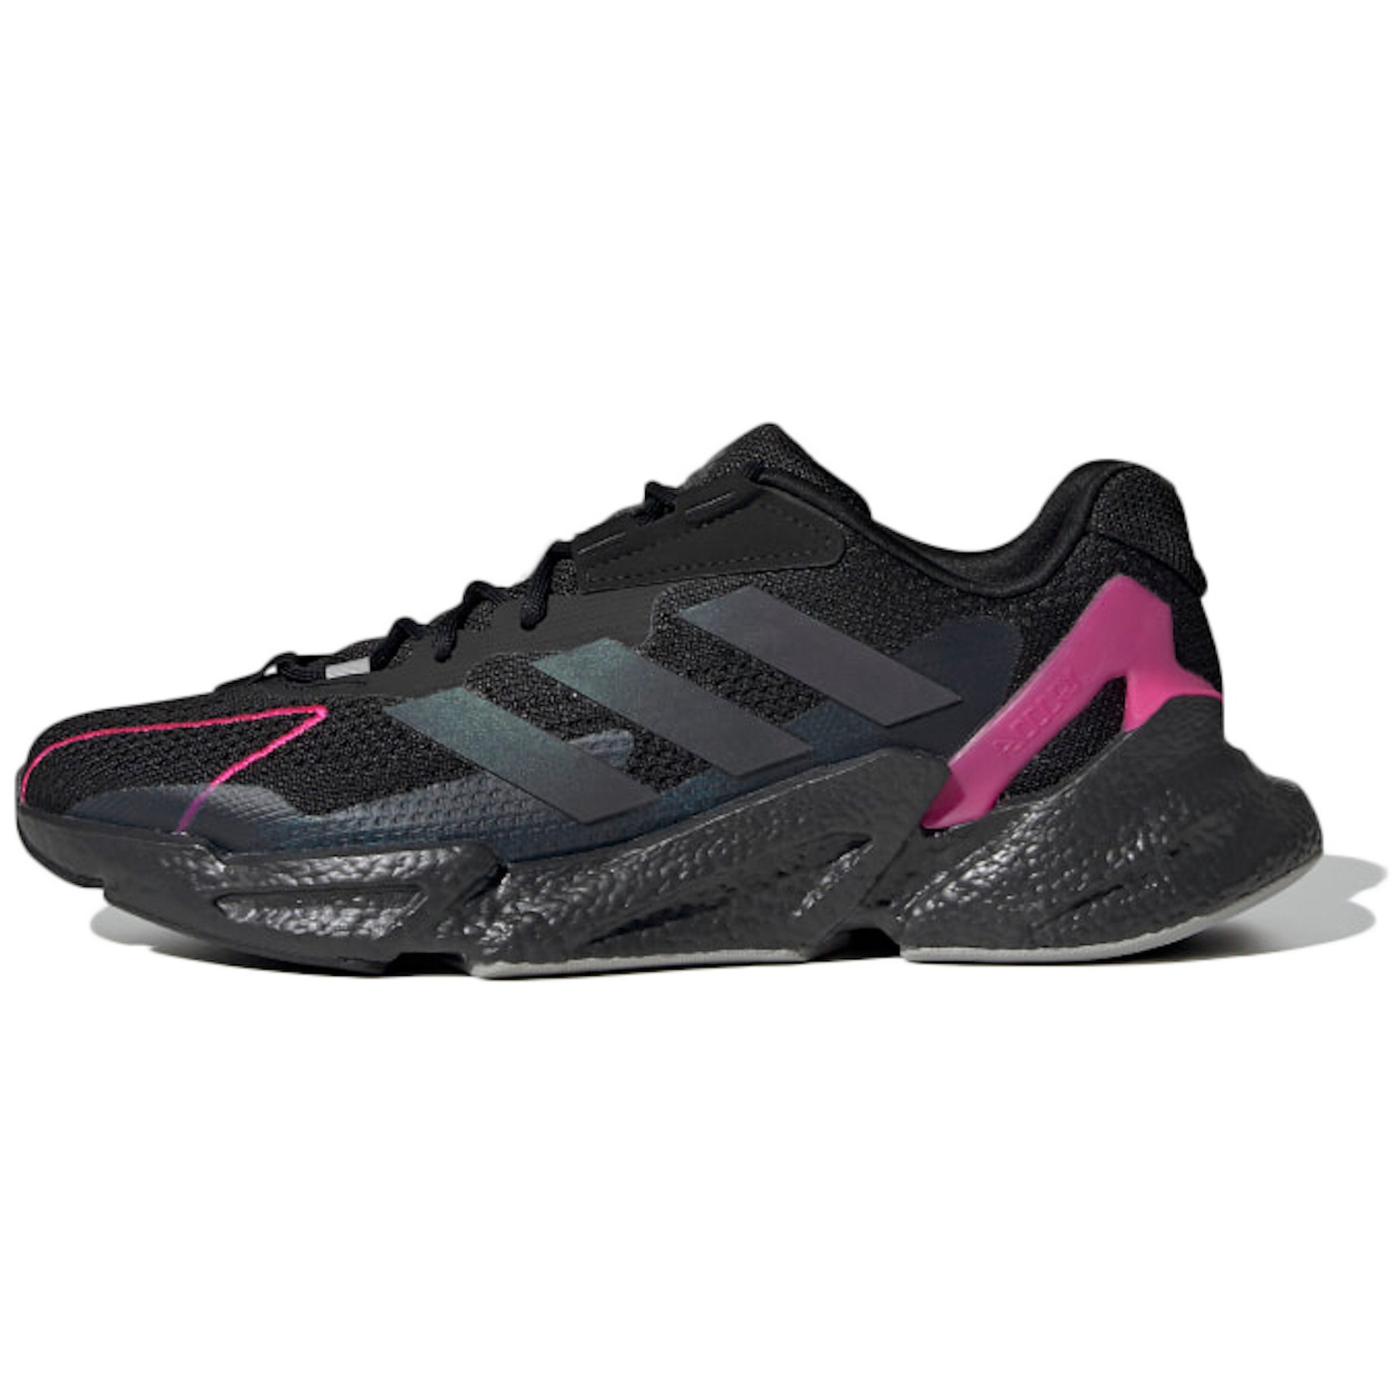 Men's adidas X9000L4 - "Black/ Shock Pink"